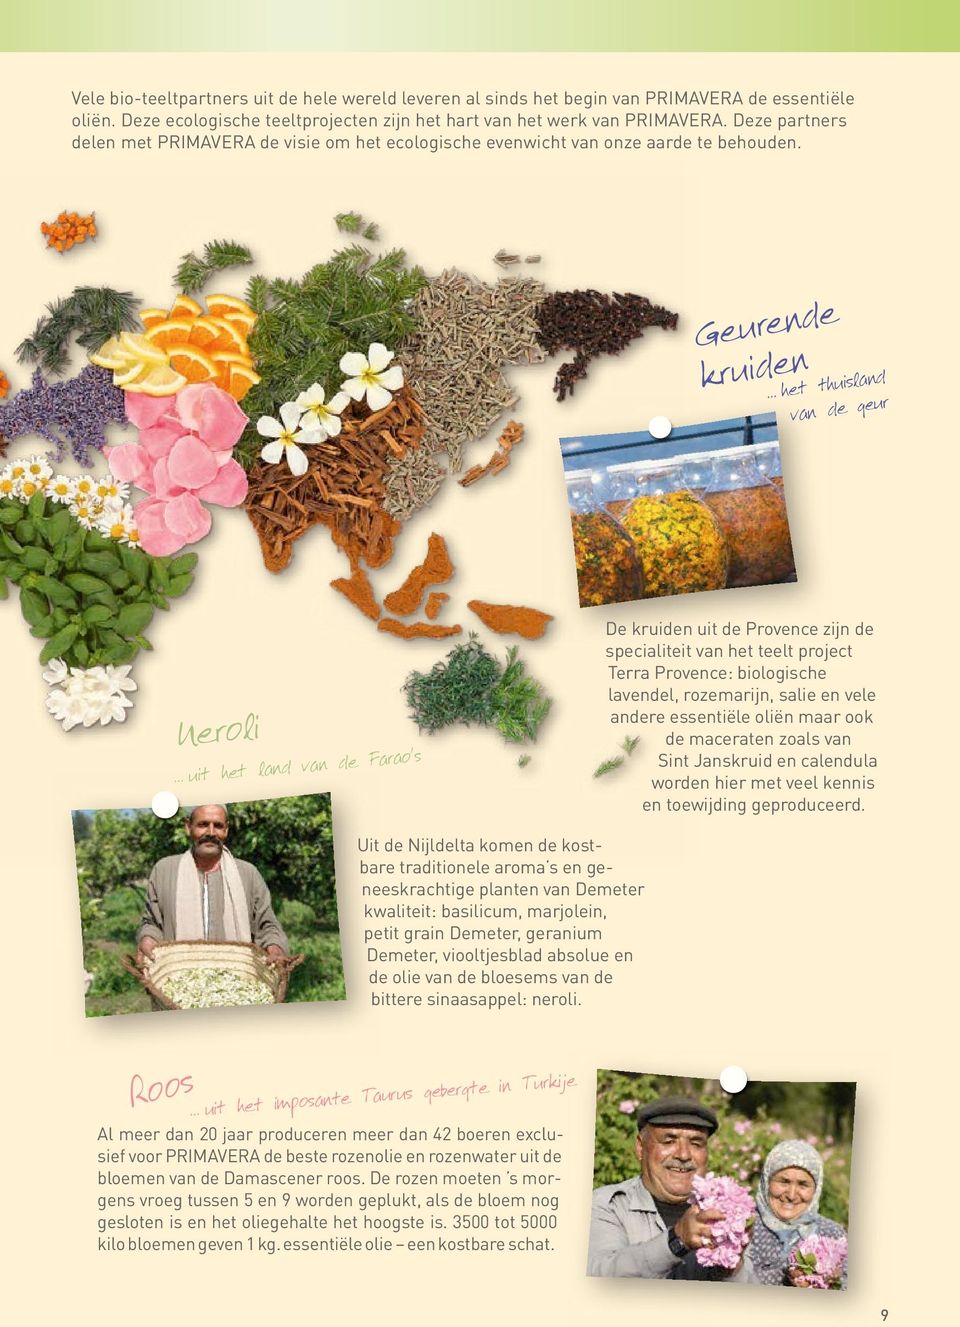 Geurende kruiden het thuisland van de geur Neroli uit het land van de Farao s De kruiden uit de Provence zijn de specialiteit van het teelt project Terra Provence: biologische lavendel, rozemarijn,